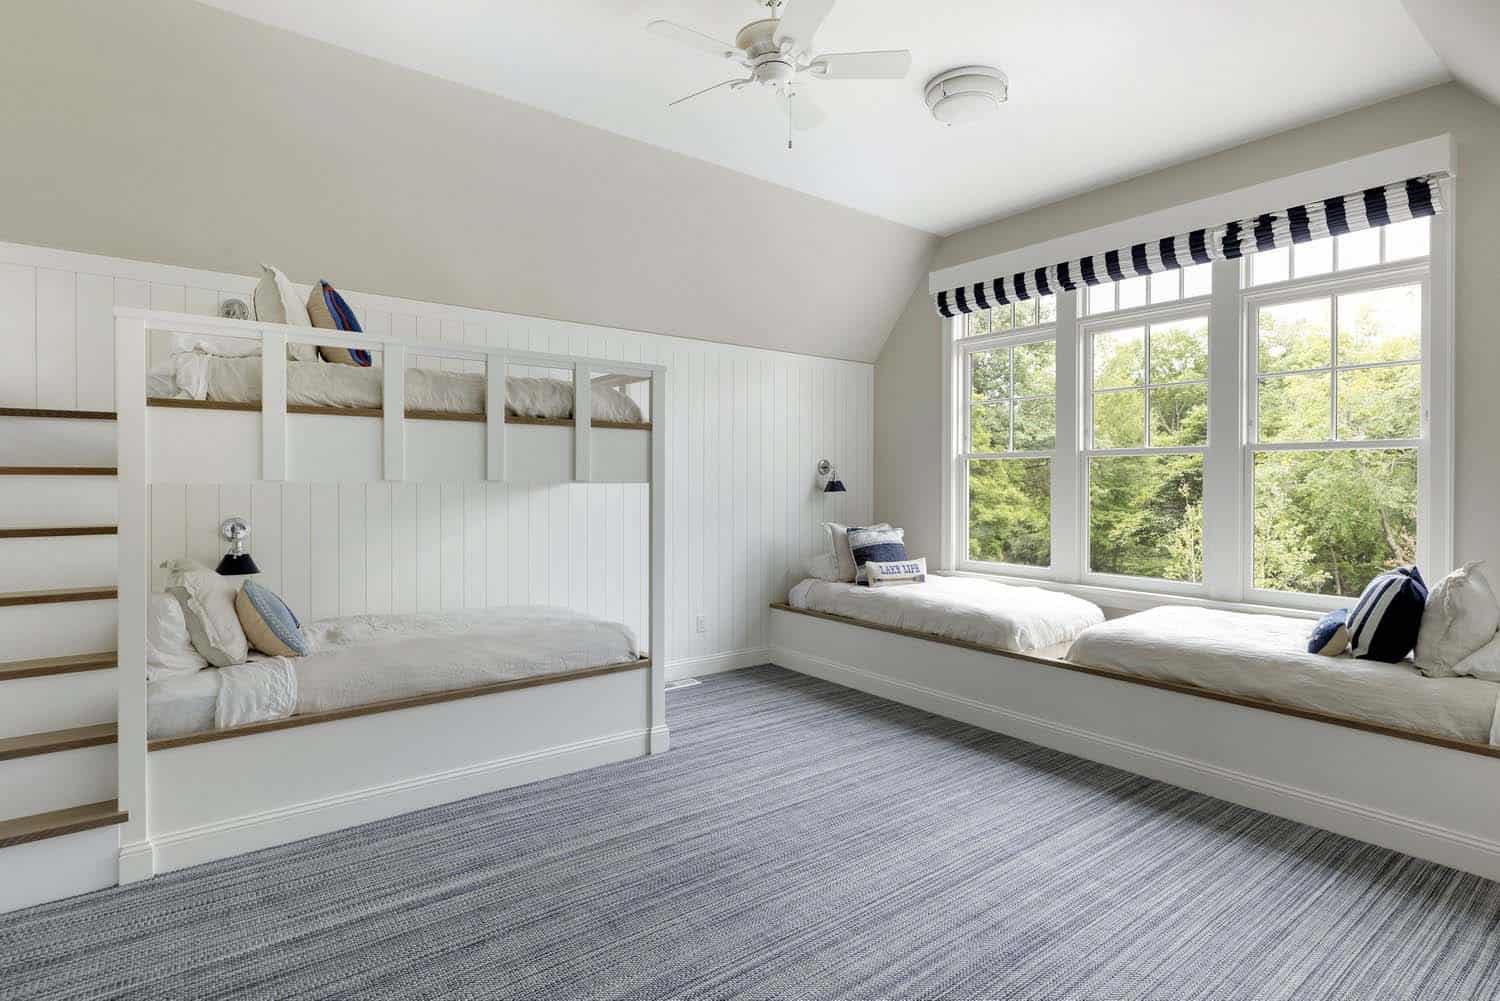 coastal-style-bunk-bedroom